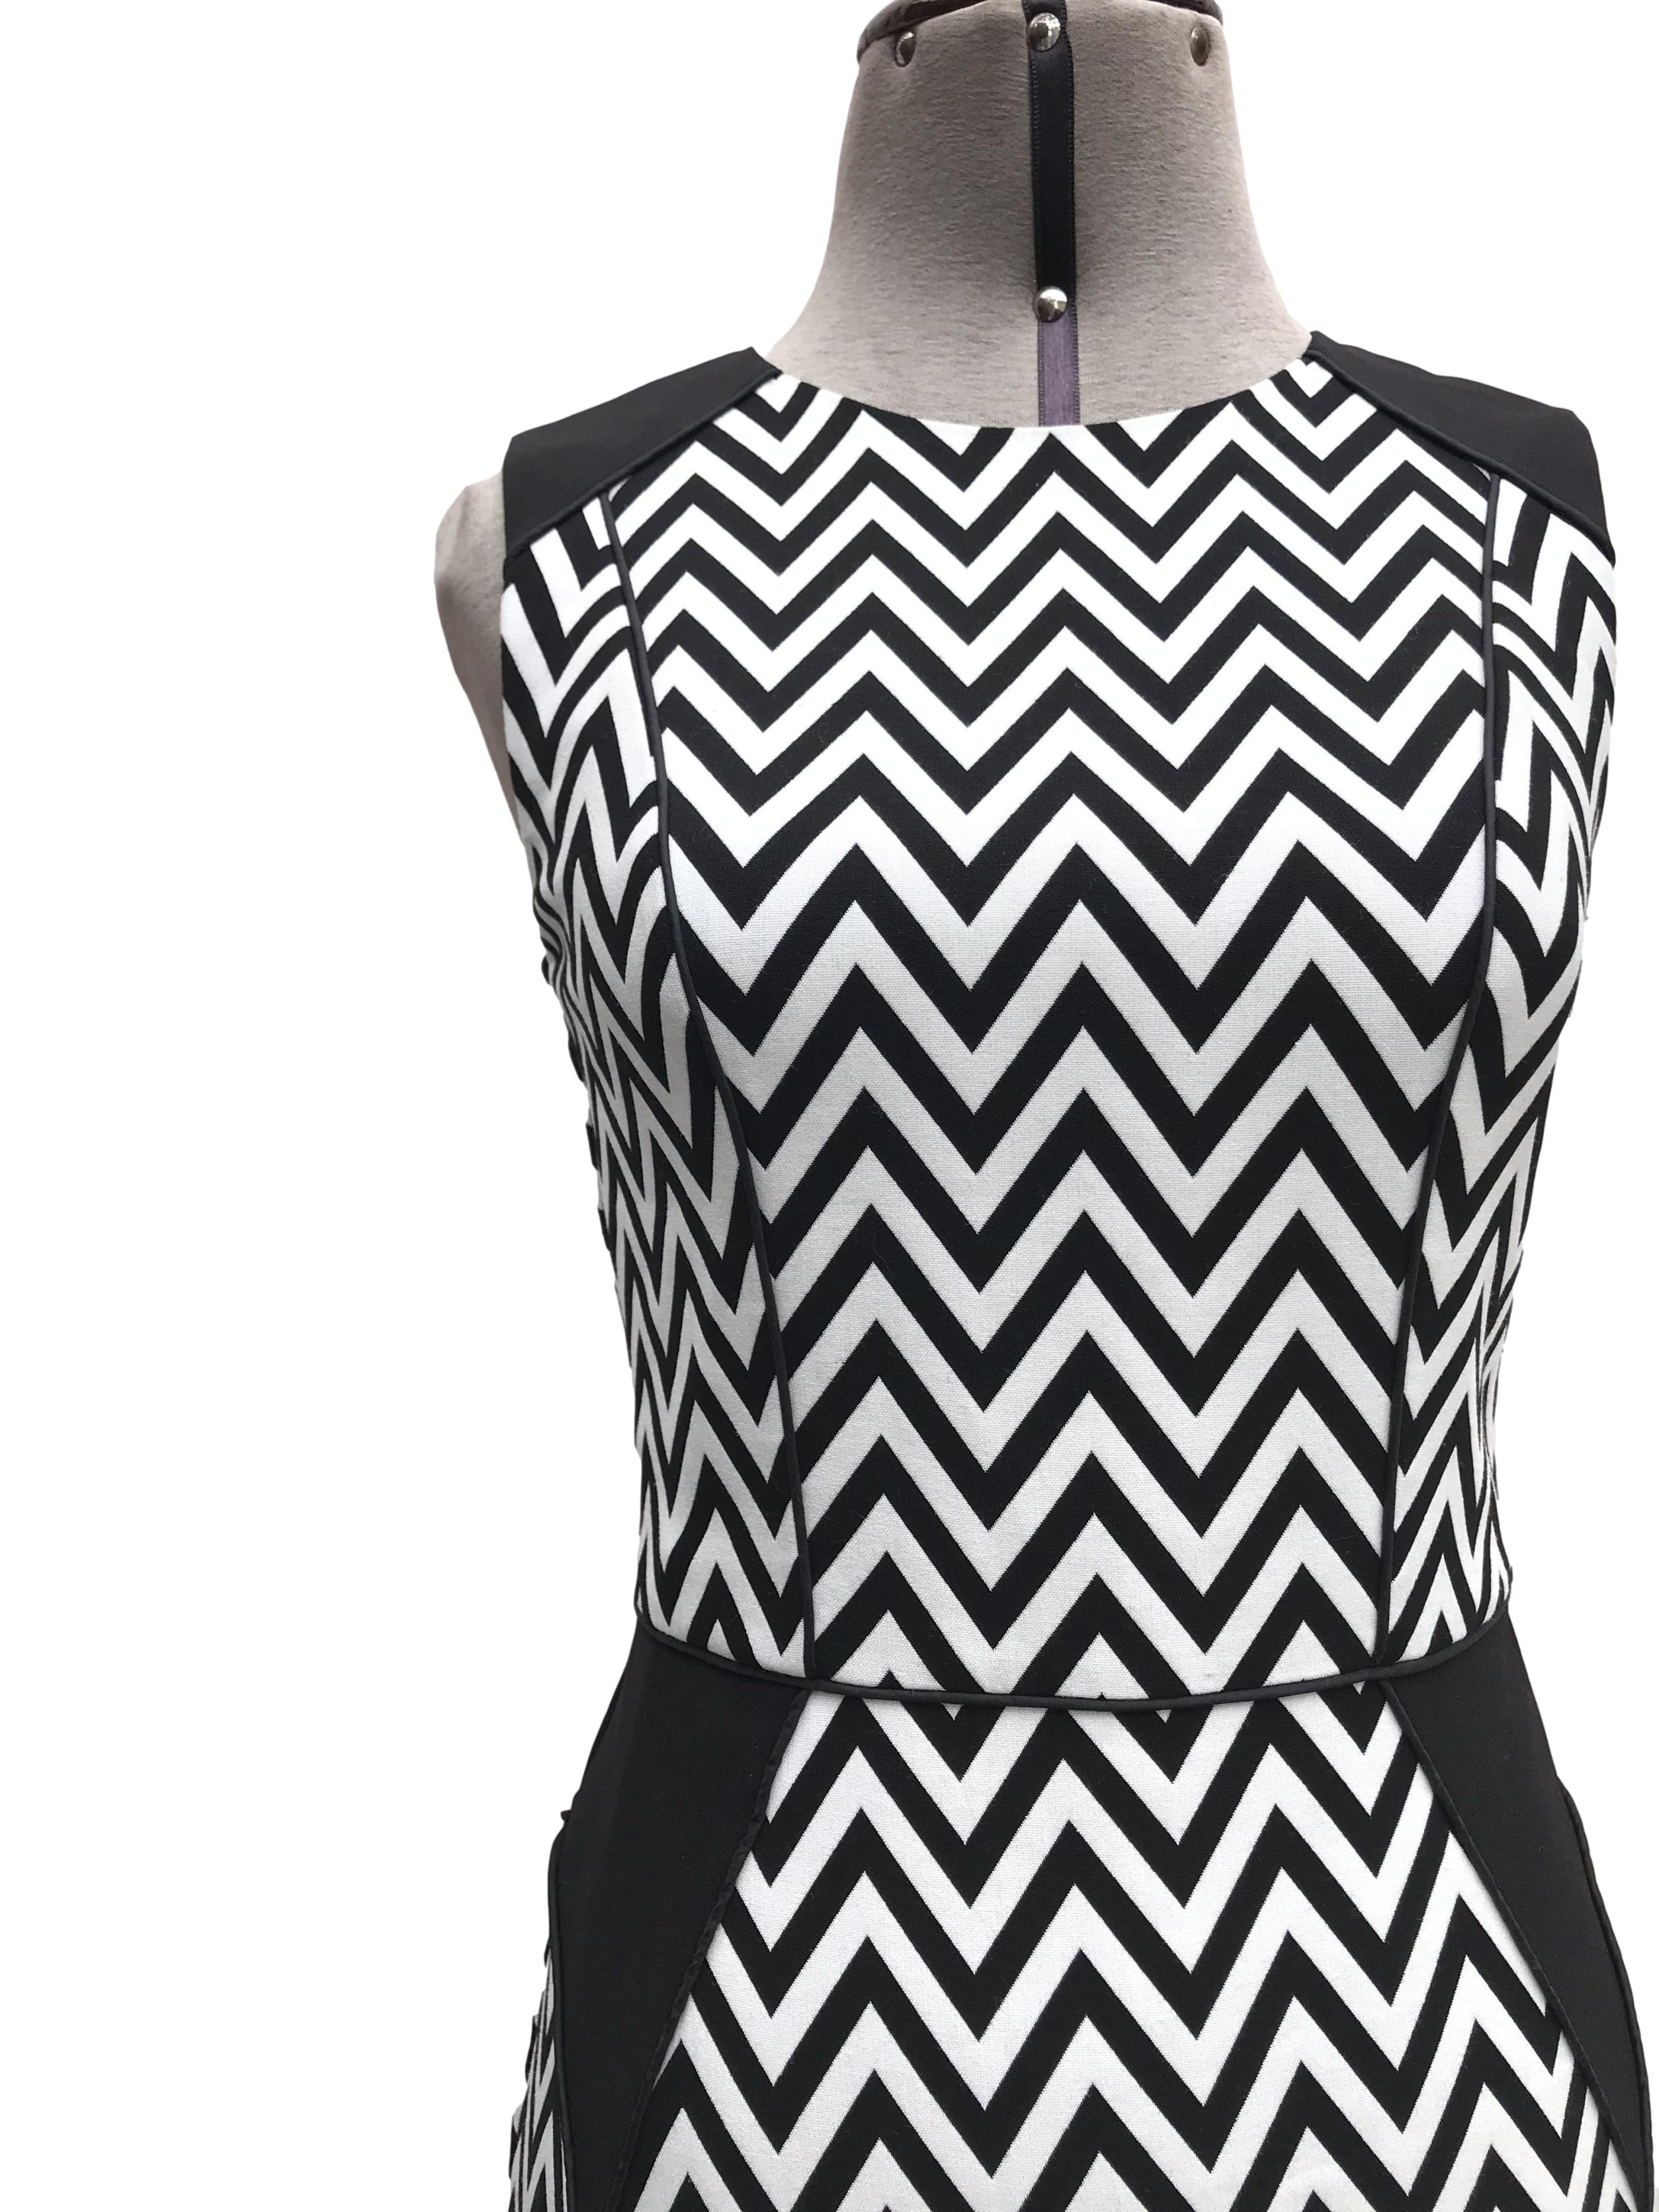 Vestido H&M estampado zigzag blanco y negro, forrado, ribetes negros, cierre y escote posterior. Largo 87cm Precio originsl S/ 130